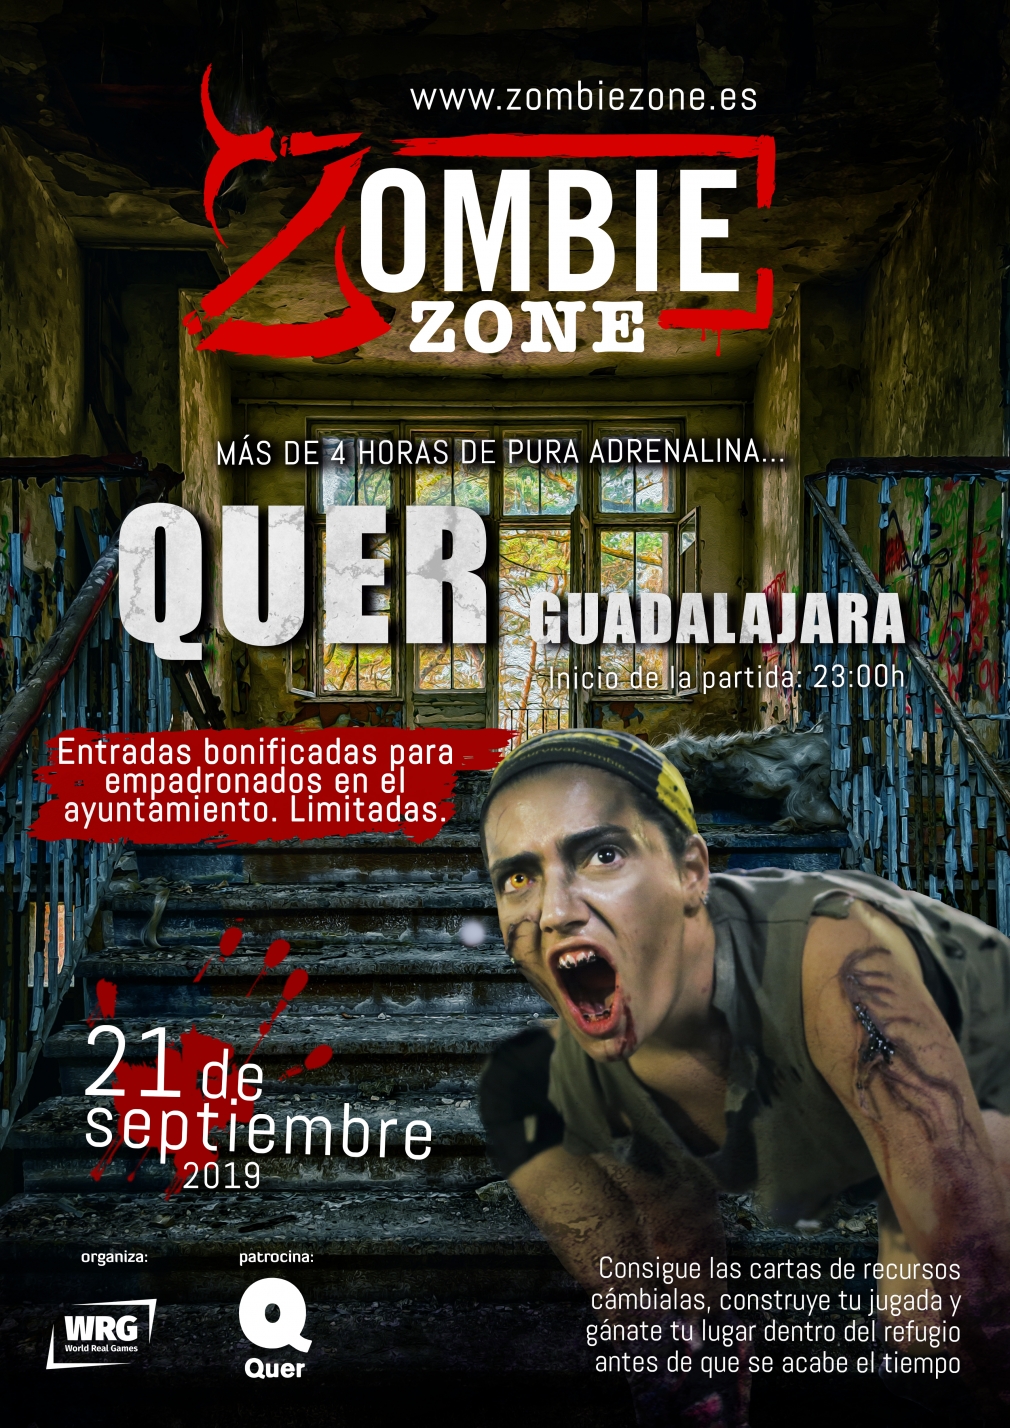 La noche del 21 de septiembre, Quer se convertirá en una Zombie Zone